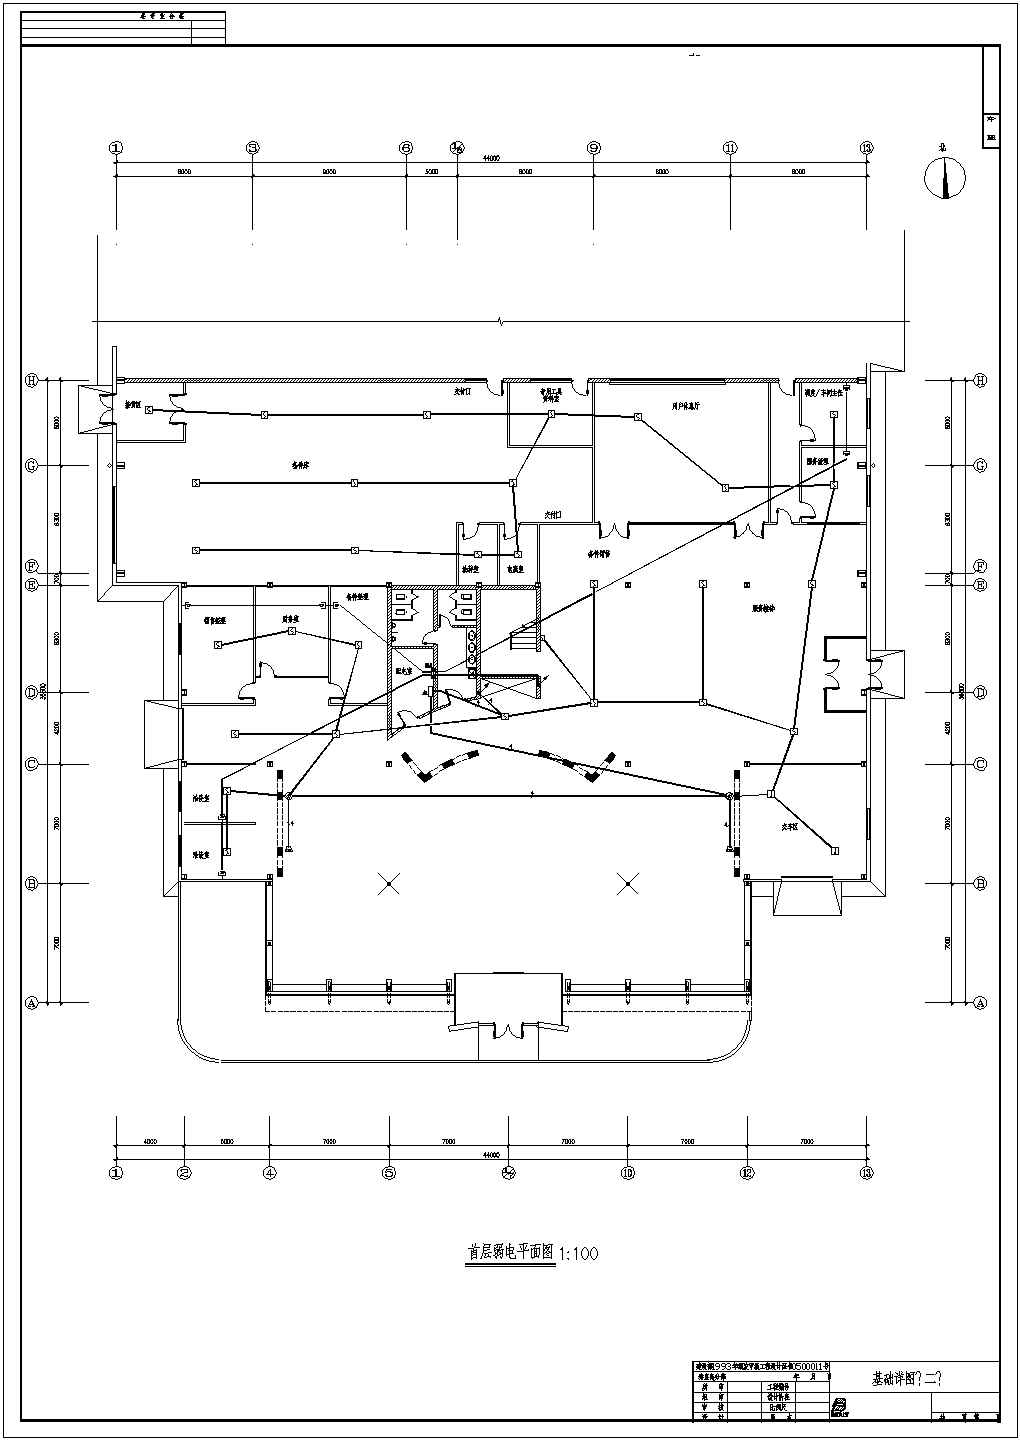 某展销中心电气设计施工图